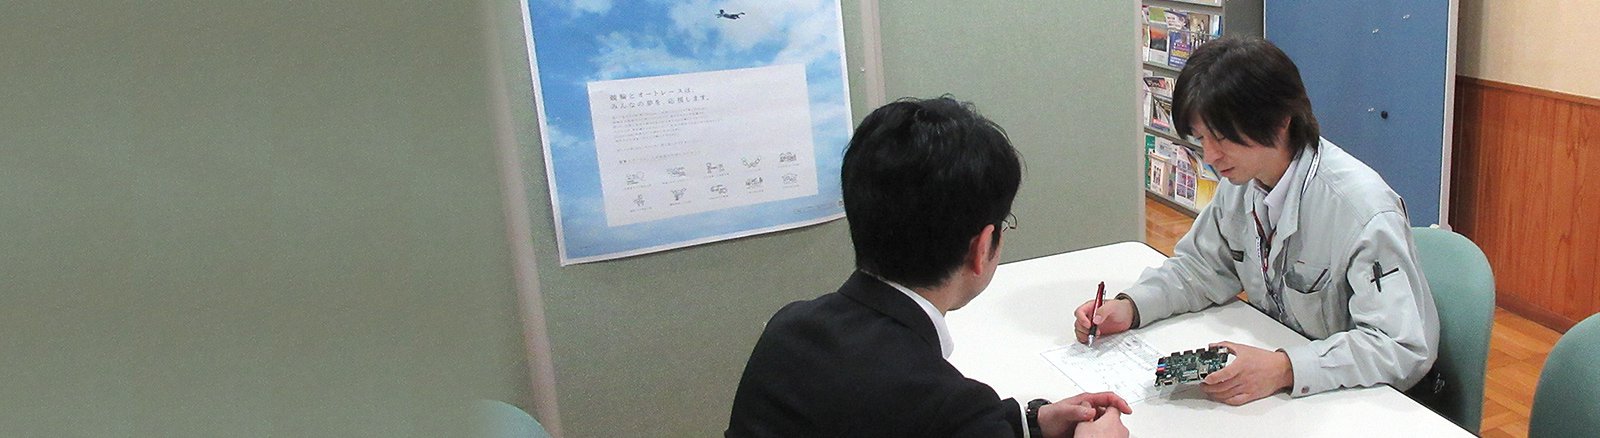 鳥取県産業技術センター 技術支援のイメージ画像